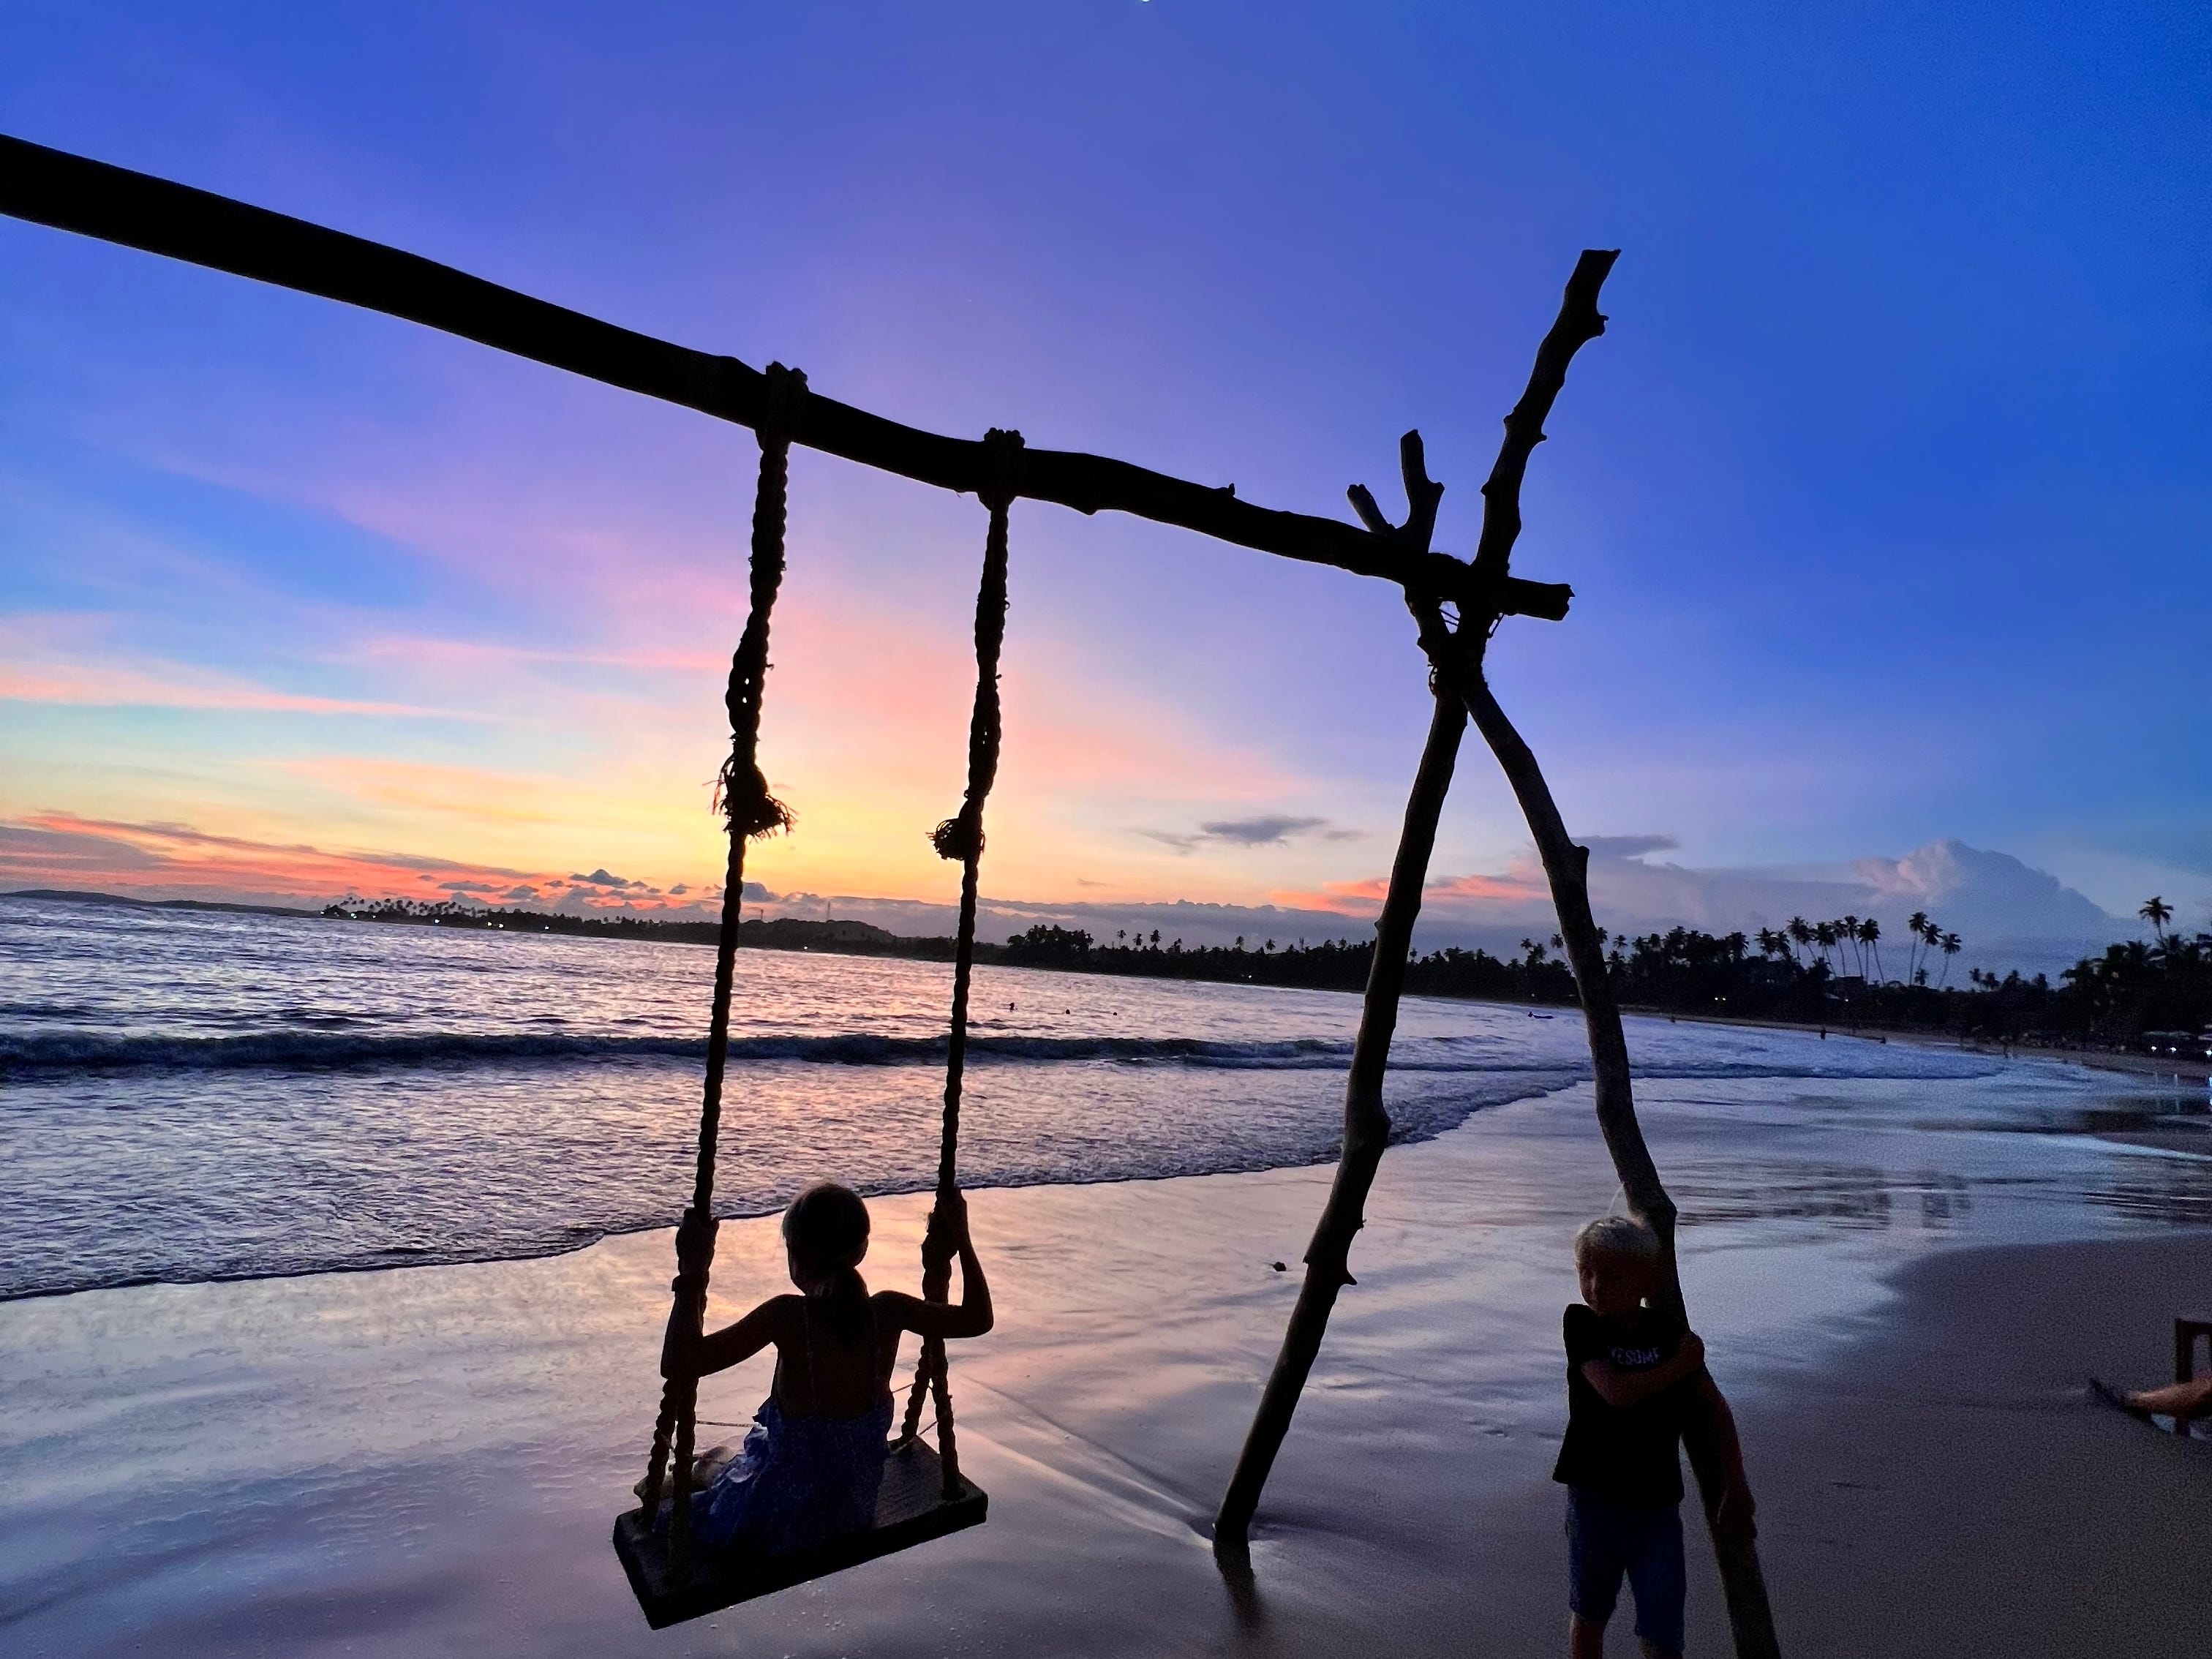 Edwards' Tochter und Sohn an einem Strand in Sri Lanka.